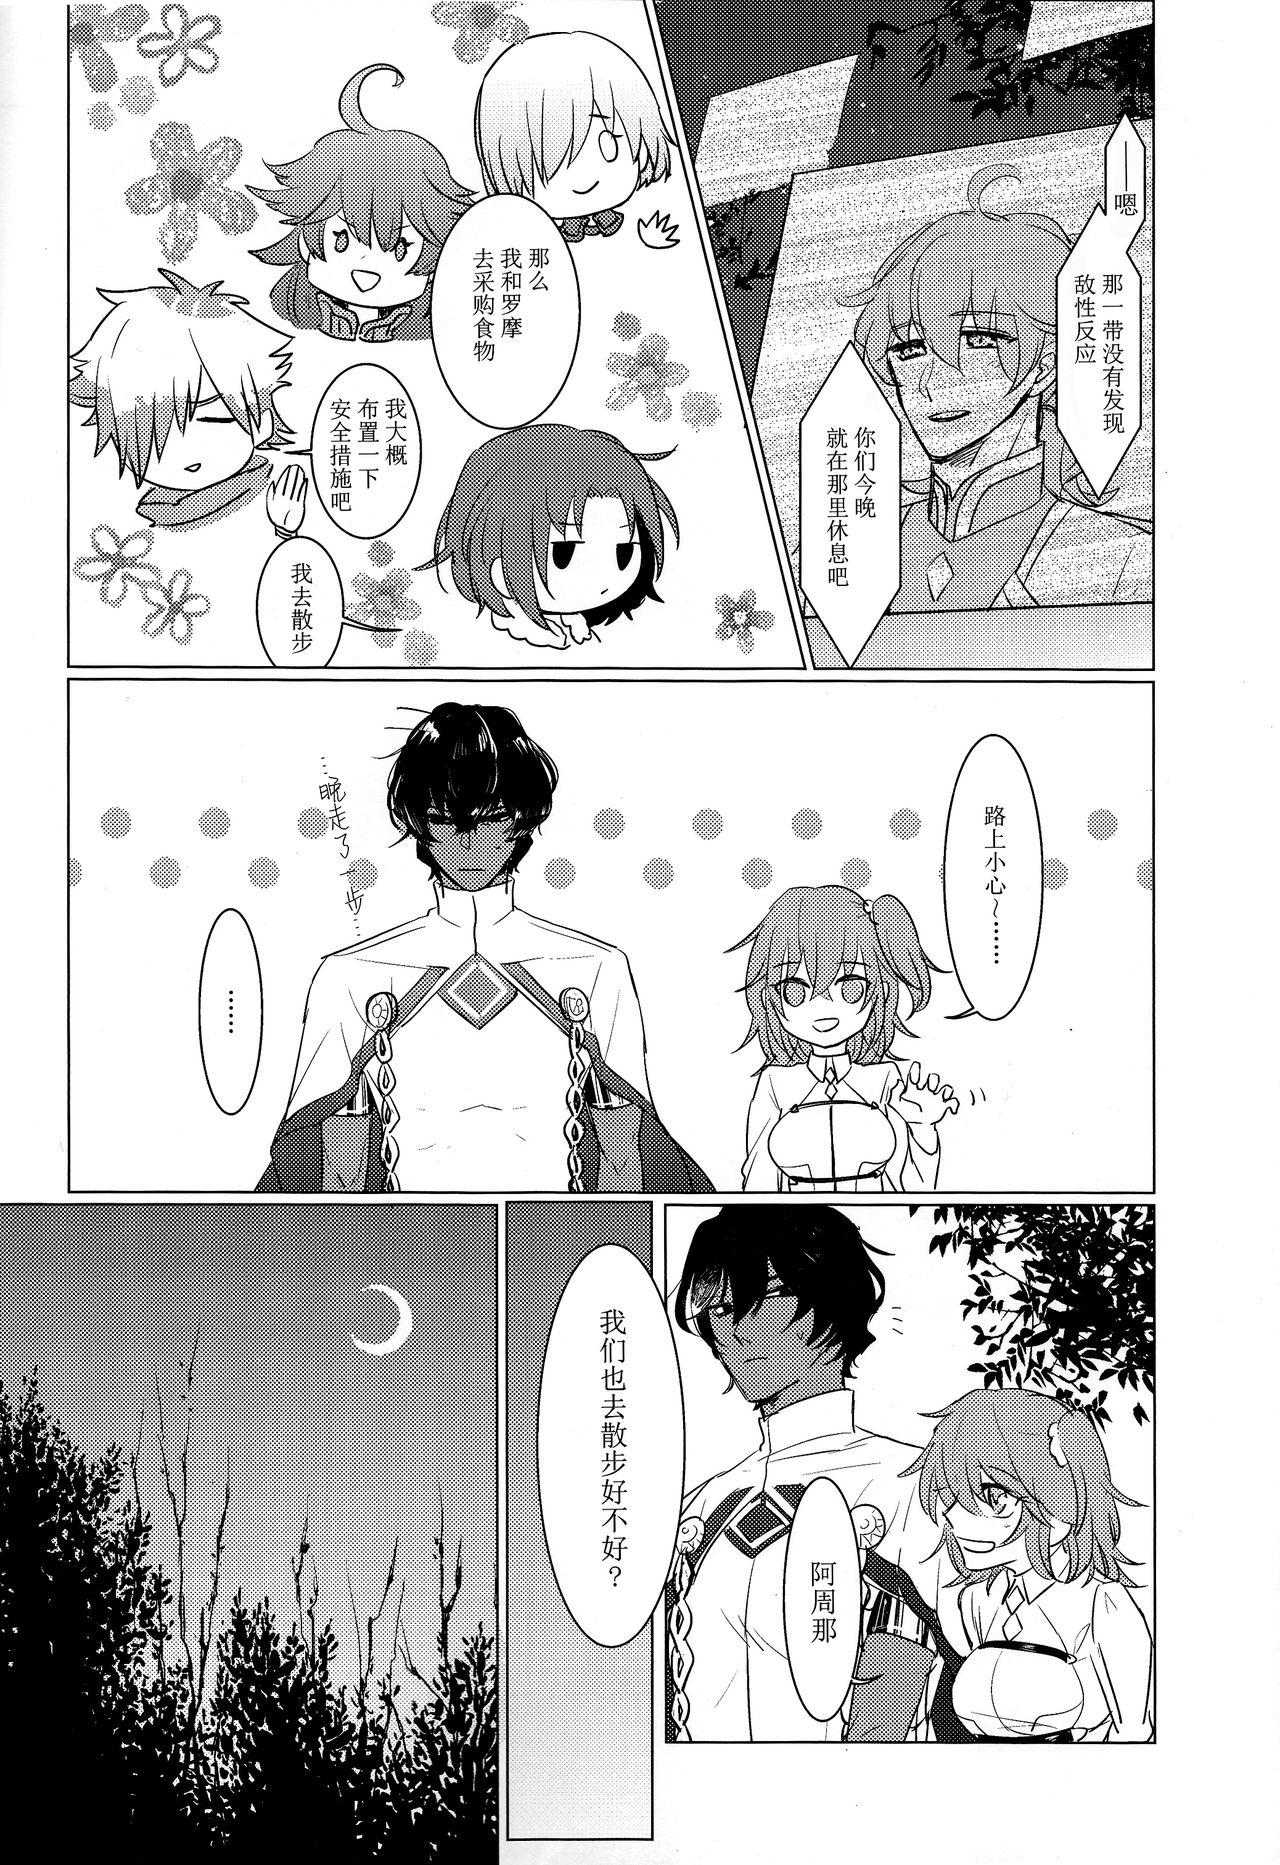 Threesome Yozora no Hoshi no Manten no shita - Fate grand order Kink - Page 8